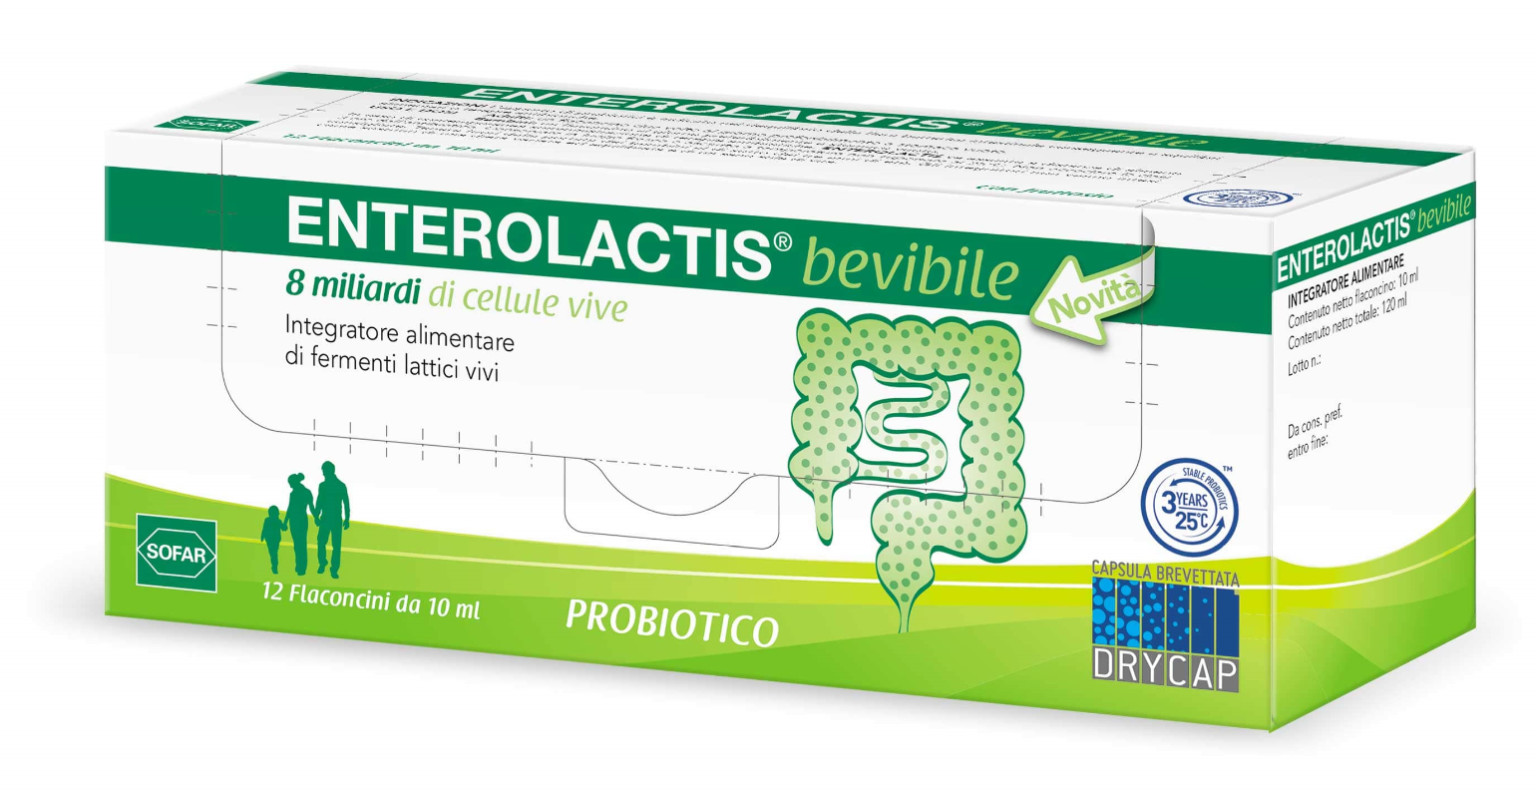 925038996 - Enterolactis Integratore Alimentare di Fermenti Lattici 12 flaconcini 10ml - 7864966_2.jpg